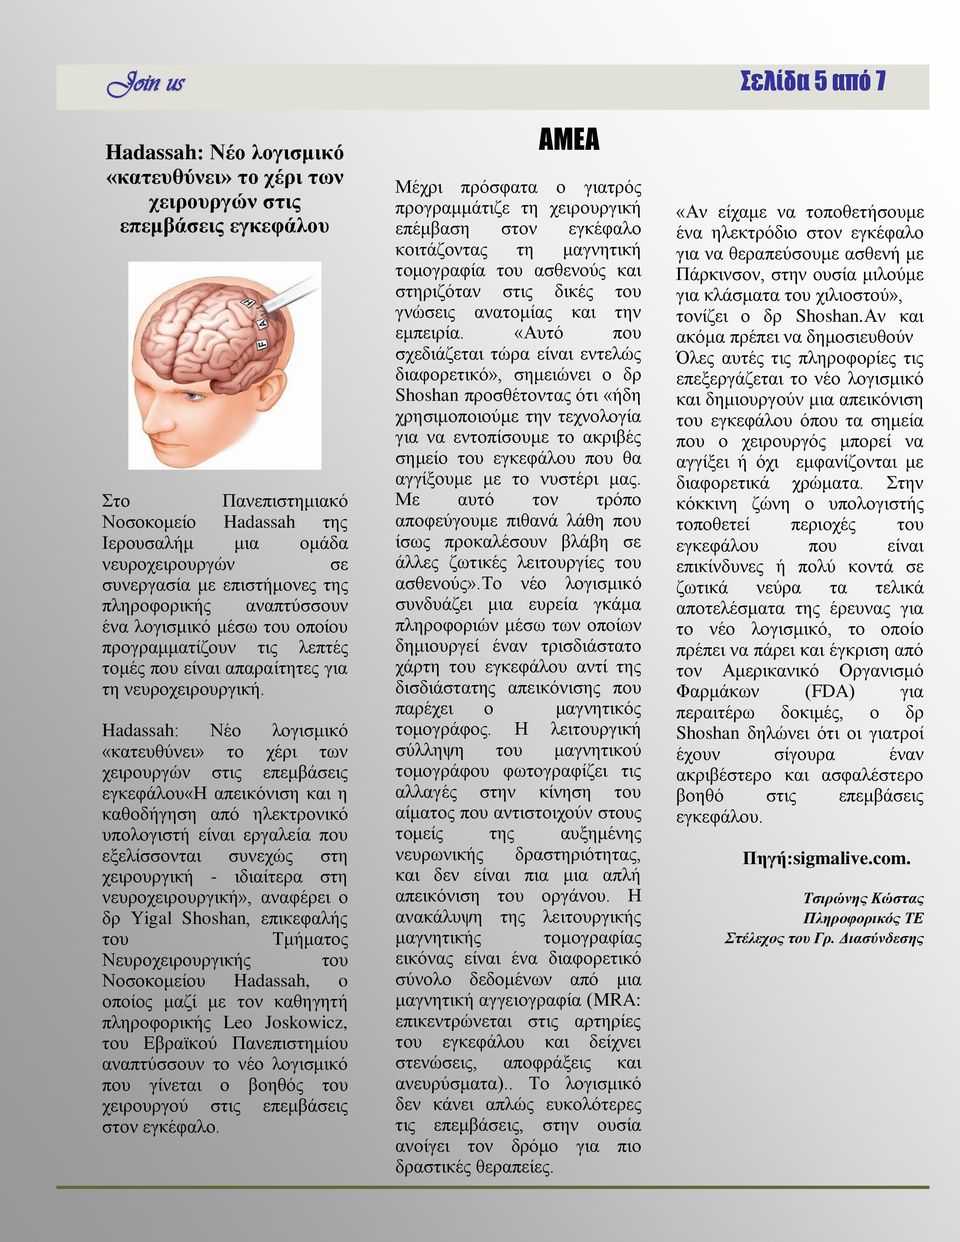 Hadassah: Νέο λογισμικό «κατευθύνει» το χέρι των χειρουργών στις επεμβάσεις εγκεφάλου«η απεικόνιση και η καθοδήγηση από ηλεκτρονικό υπολογιστή είναι εργαλεία που εξελίσσονται συνεχώς στη χειρουργική